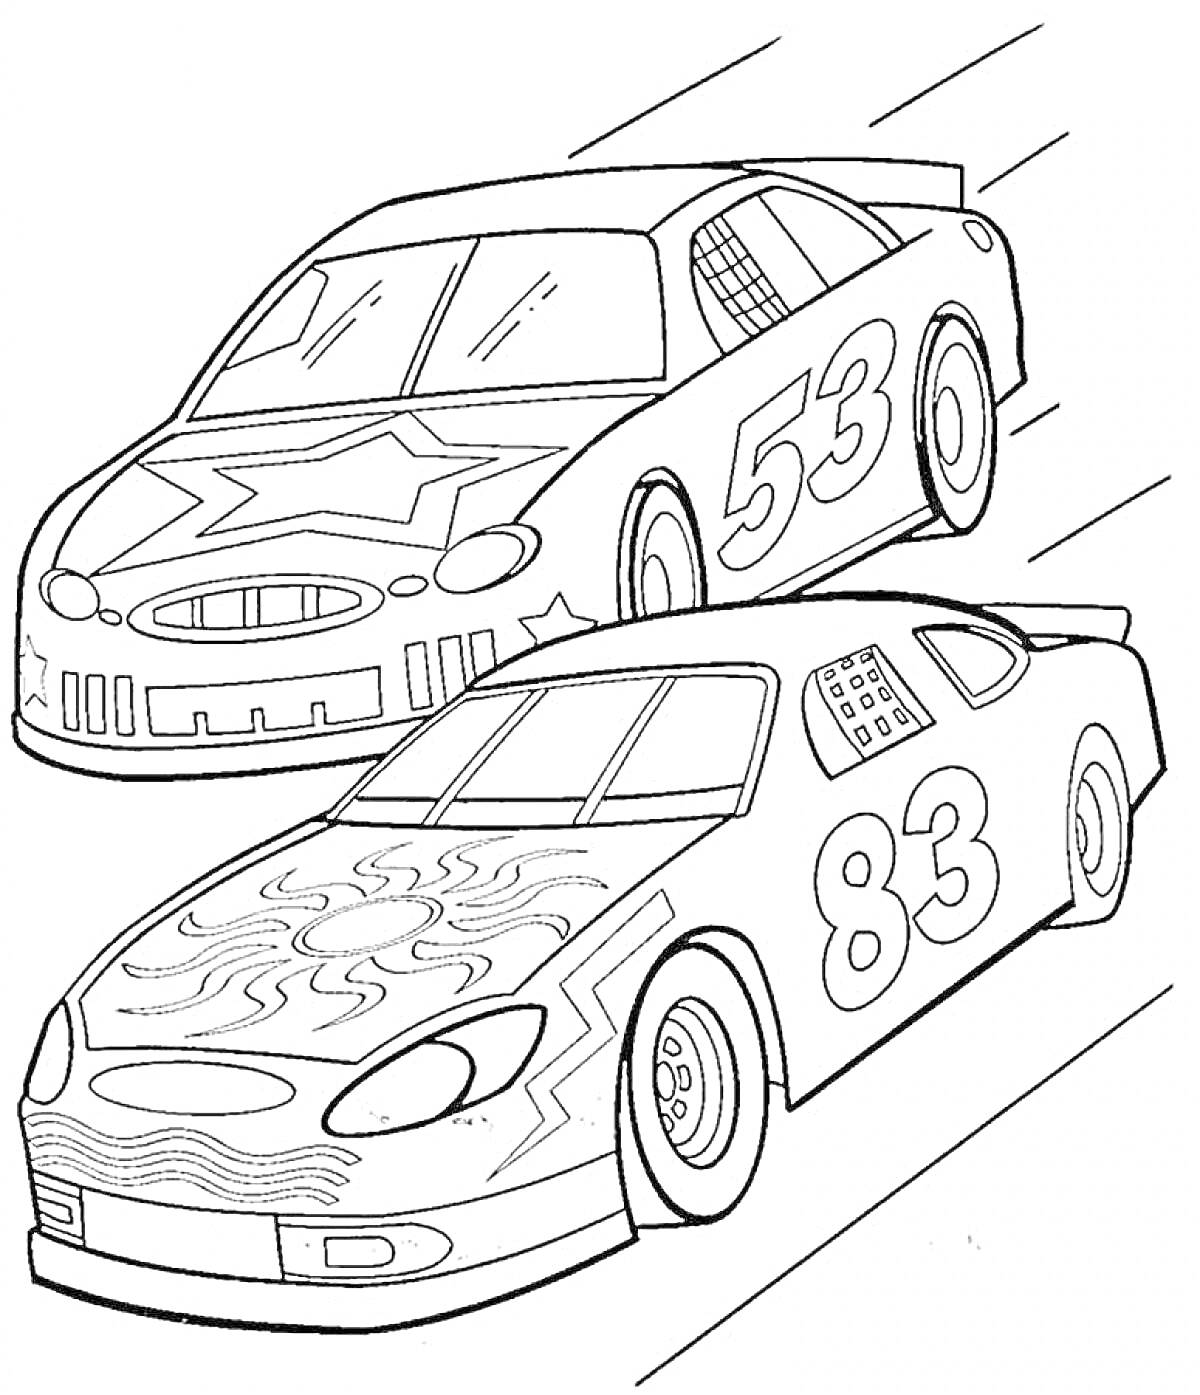 Раскраска Две гоночные машины с номерами 53 и 83